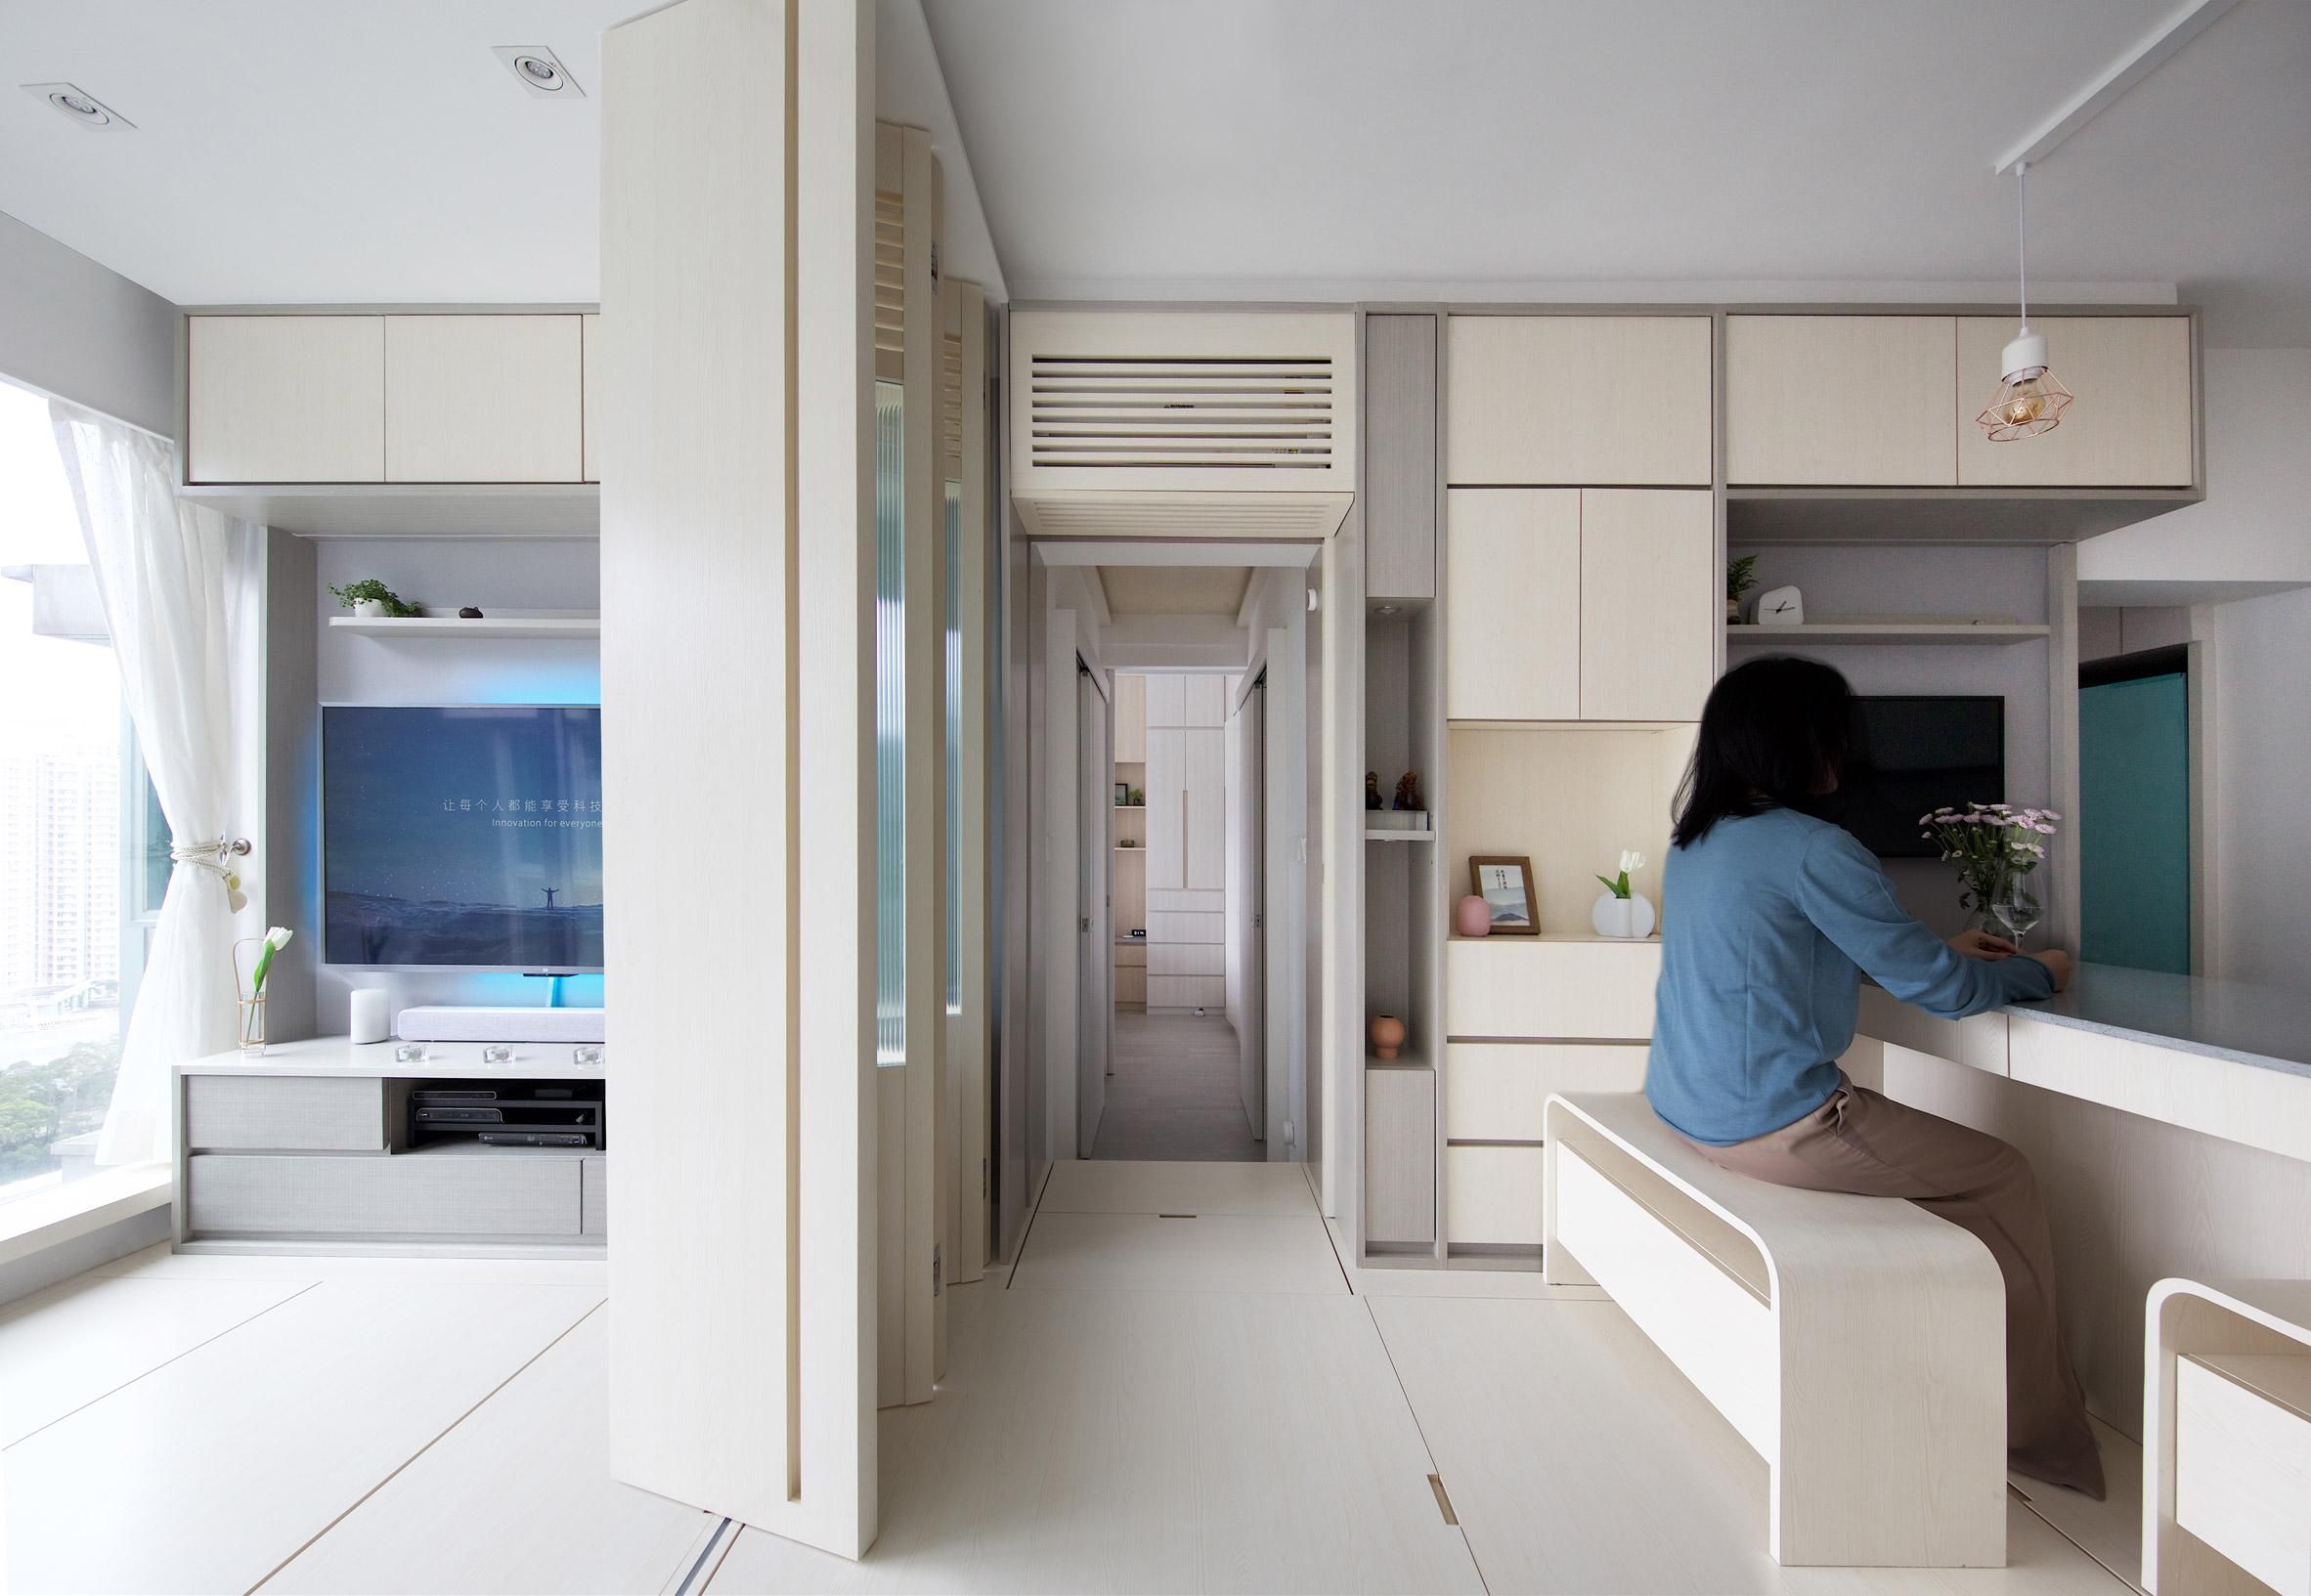 Фэн-шуй и мебель, которой управляют голосом: как выглядит сверхсовременная квартира в Гонконге